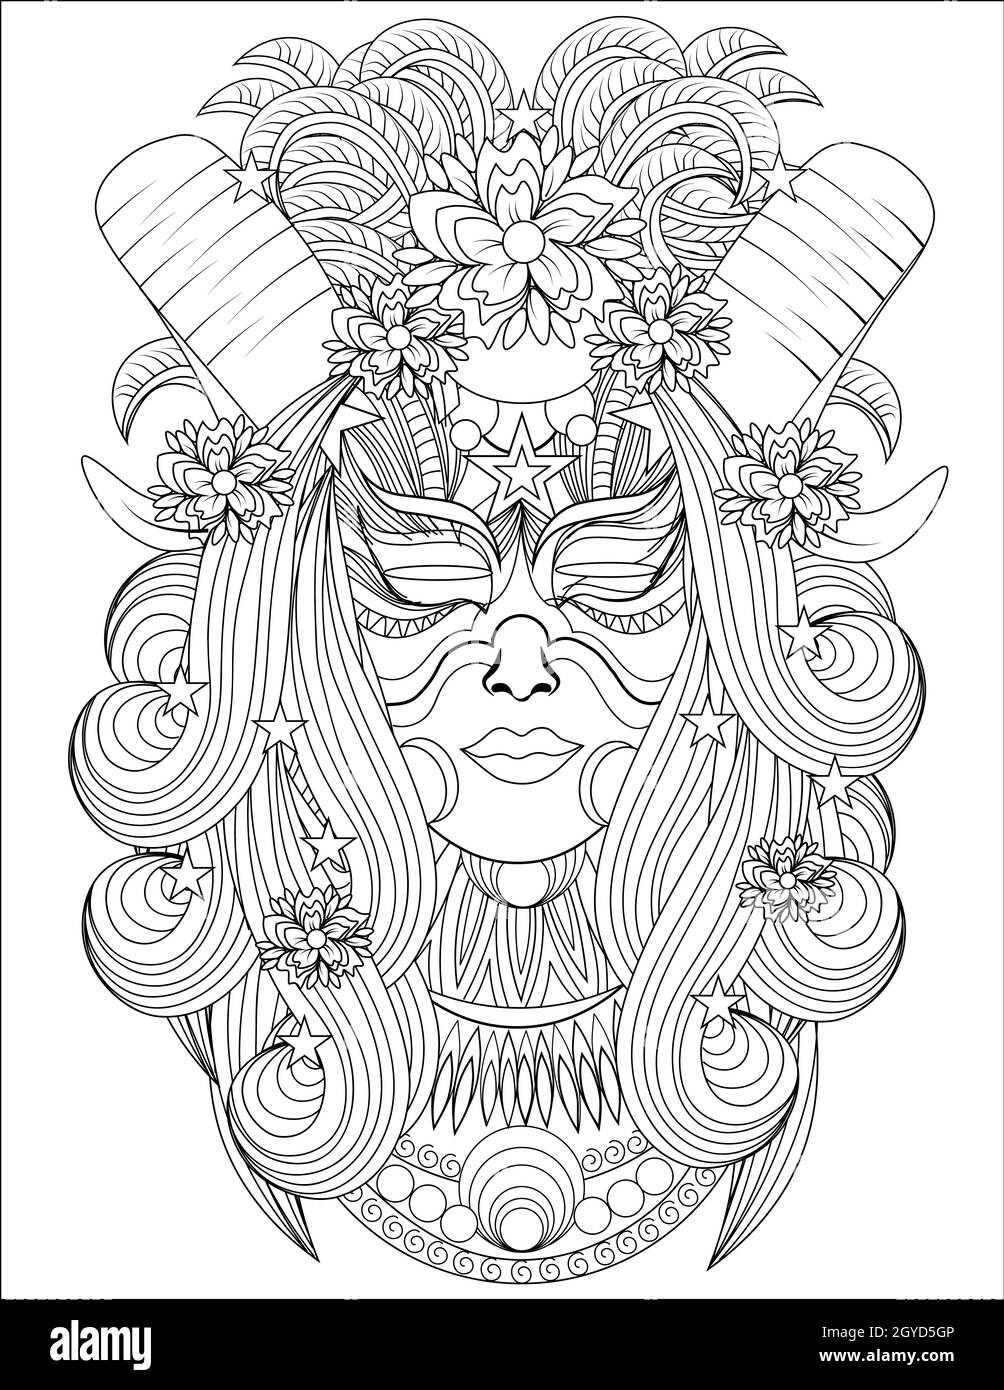 Femme tête avec cornes spiralées cheveux longs vue de face dessin de ligne. Banque D'Images